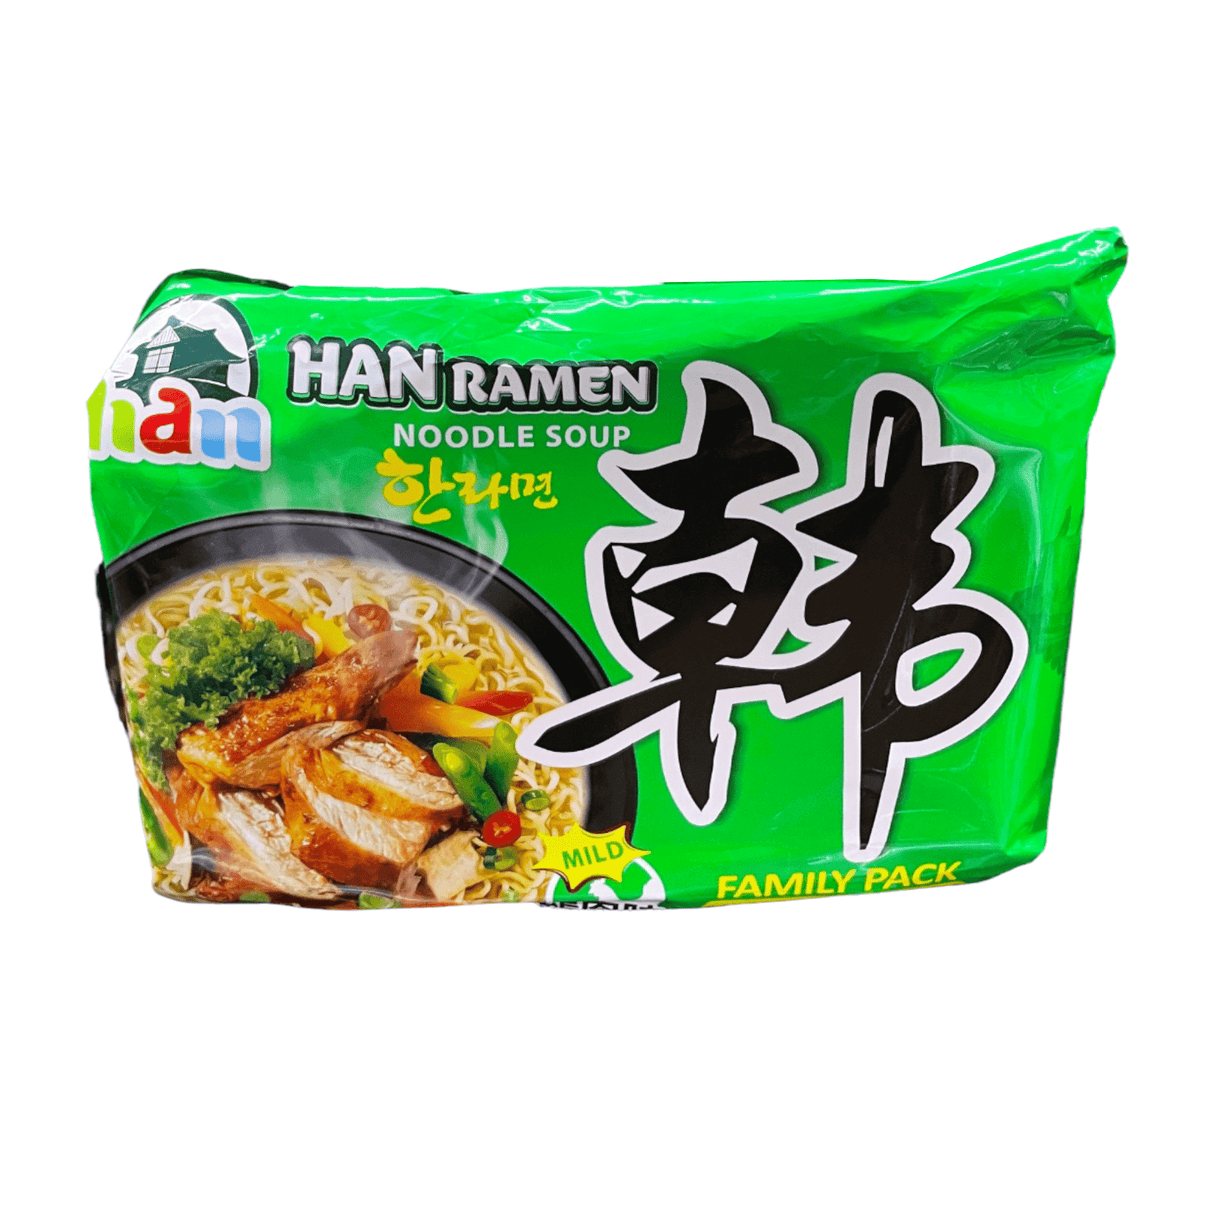 Han Ramen Noodle Soup Chicken Flavor Mild Family Pack